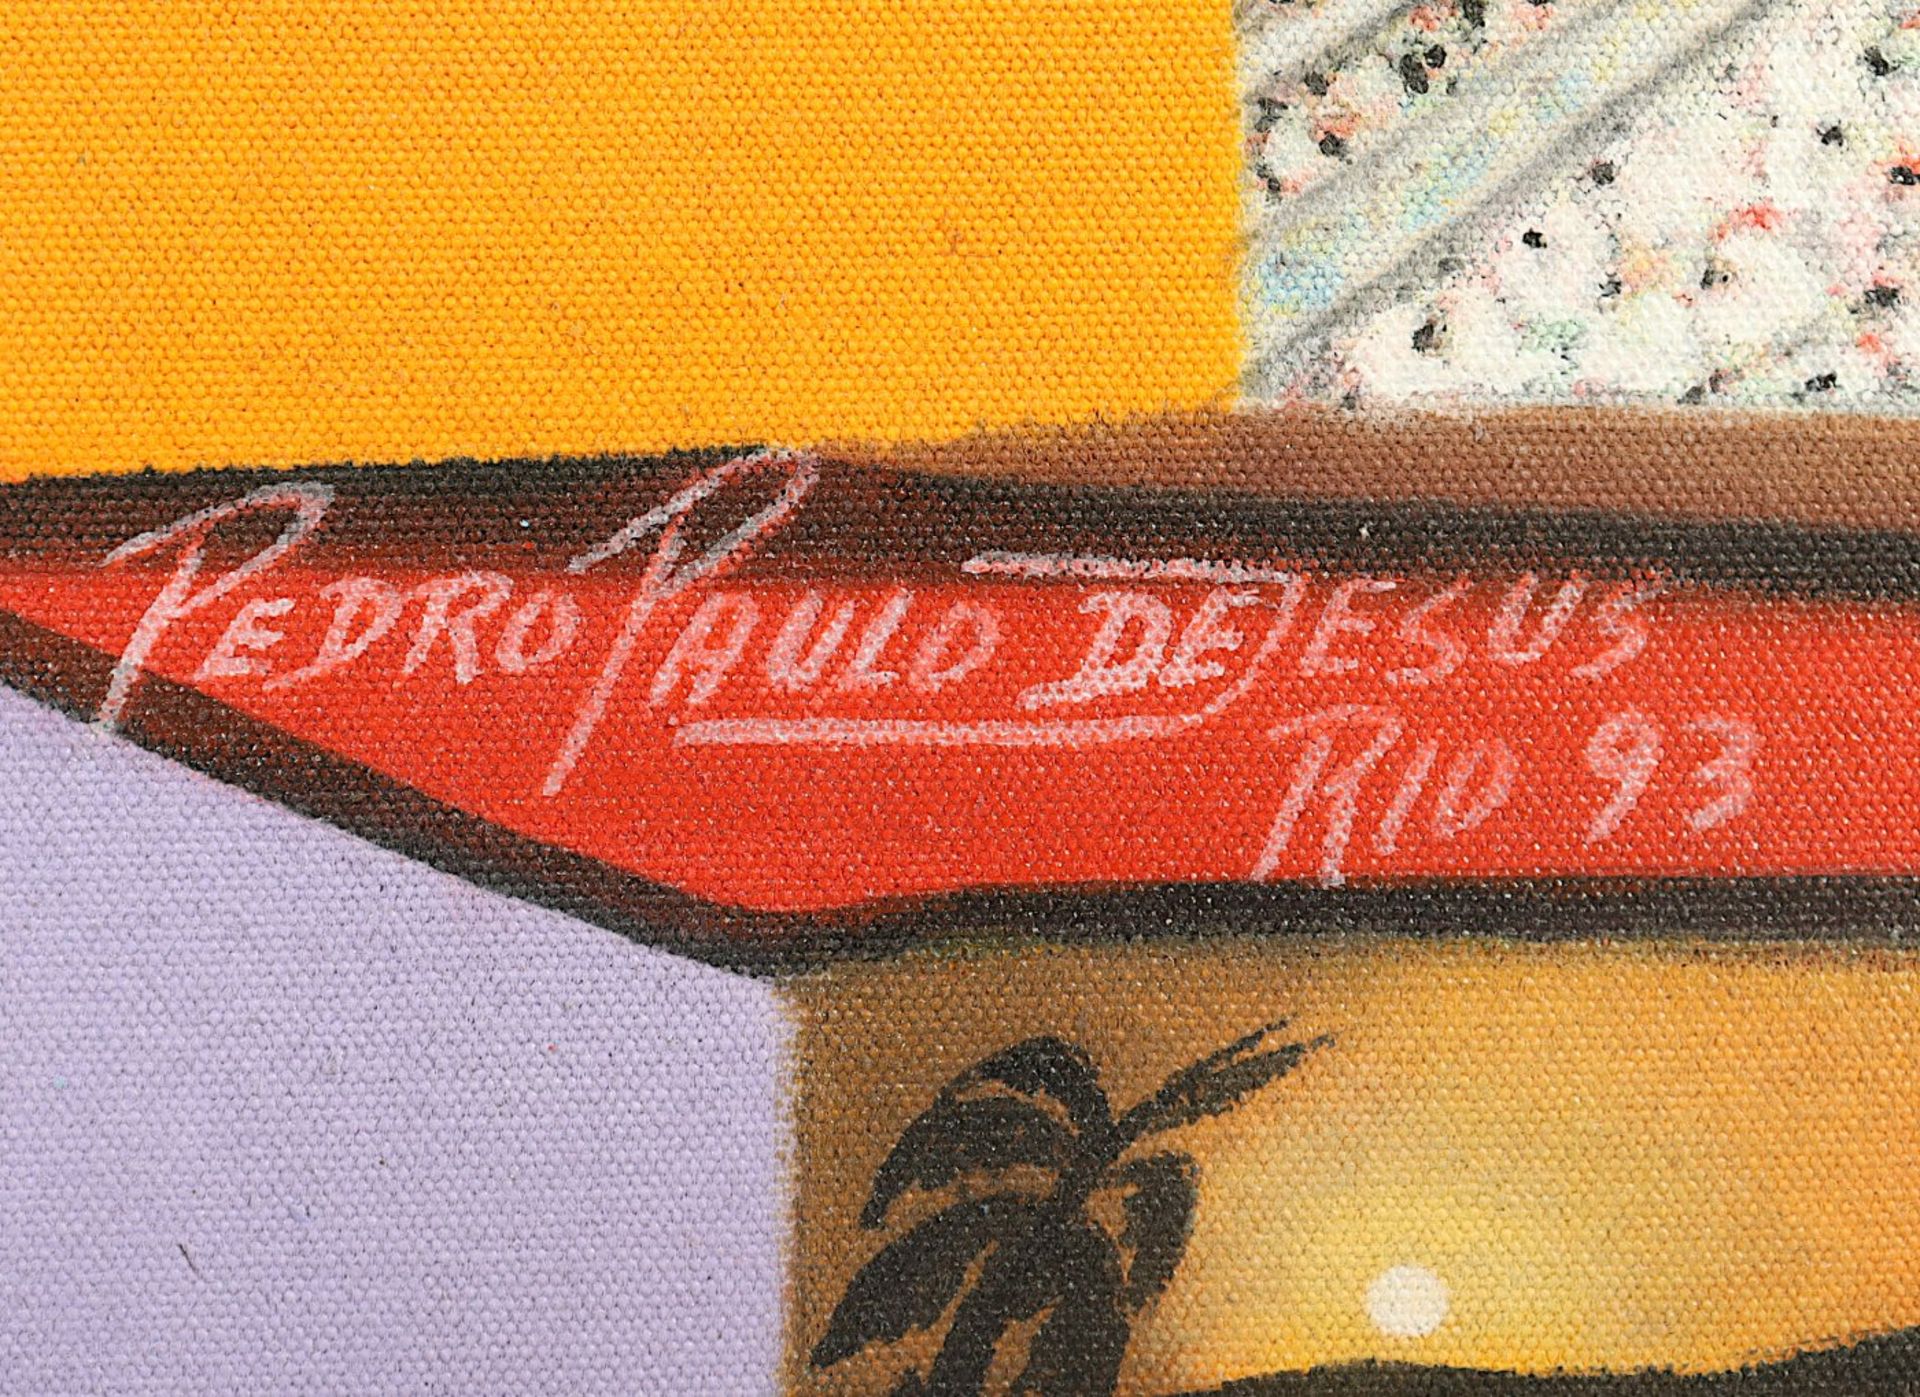 DE JESUS, Pedro Paulo, "Brasil", - Bild 3 aus 4